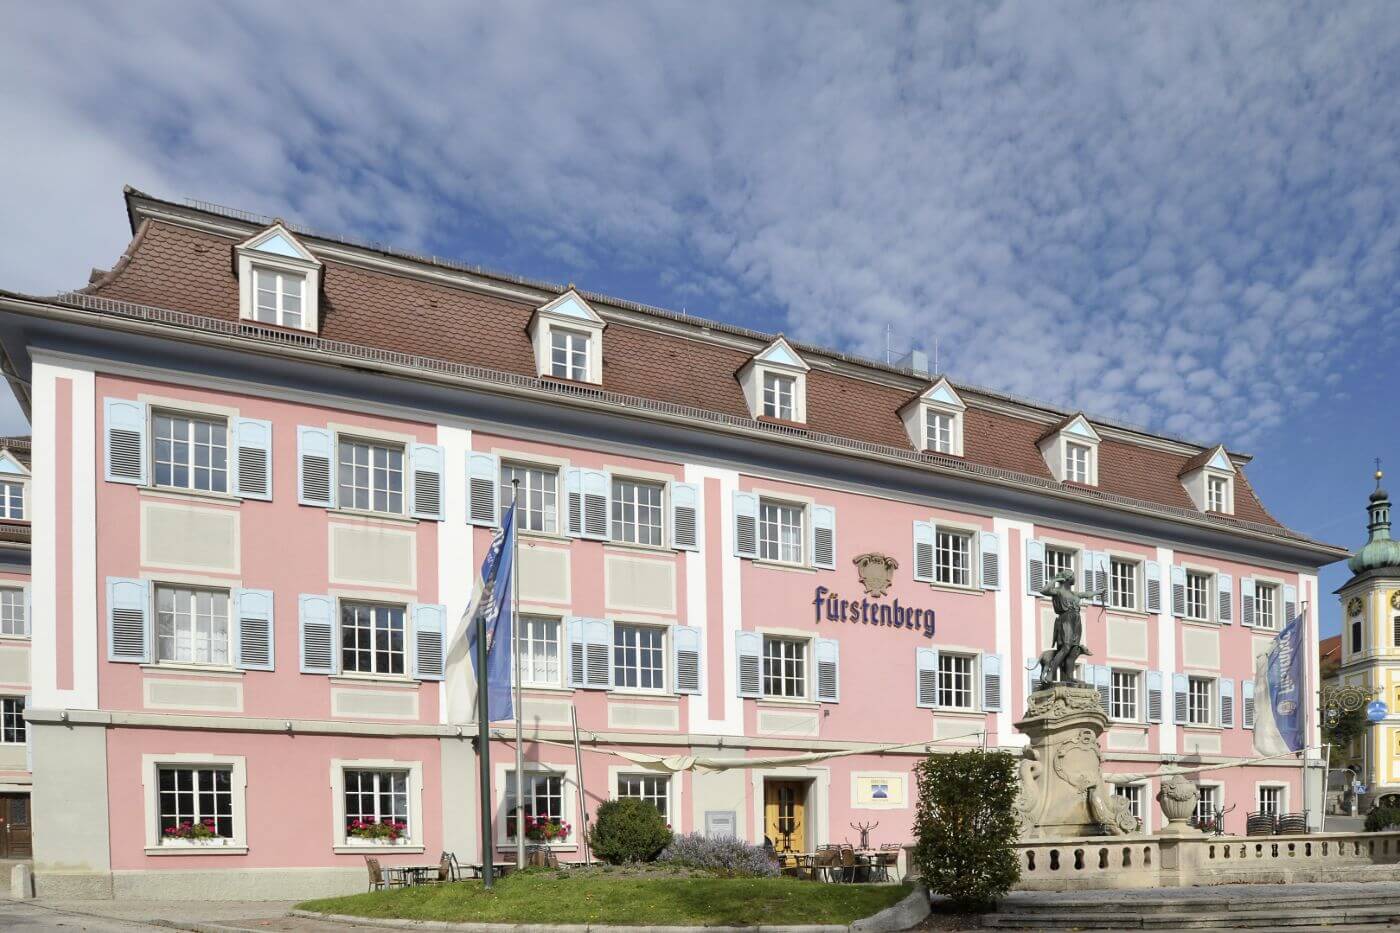 Fürstenberg Veranstaltungsgebäude, der Sehenswürdigkeit im Schwarzwald